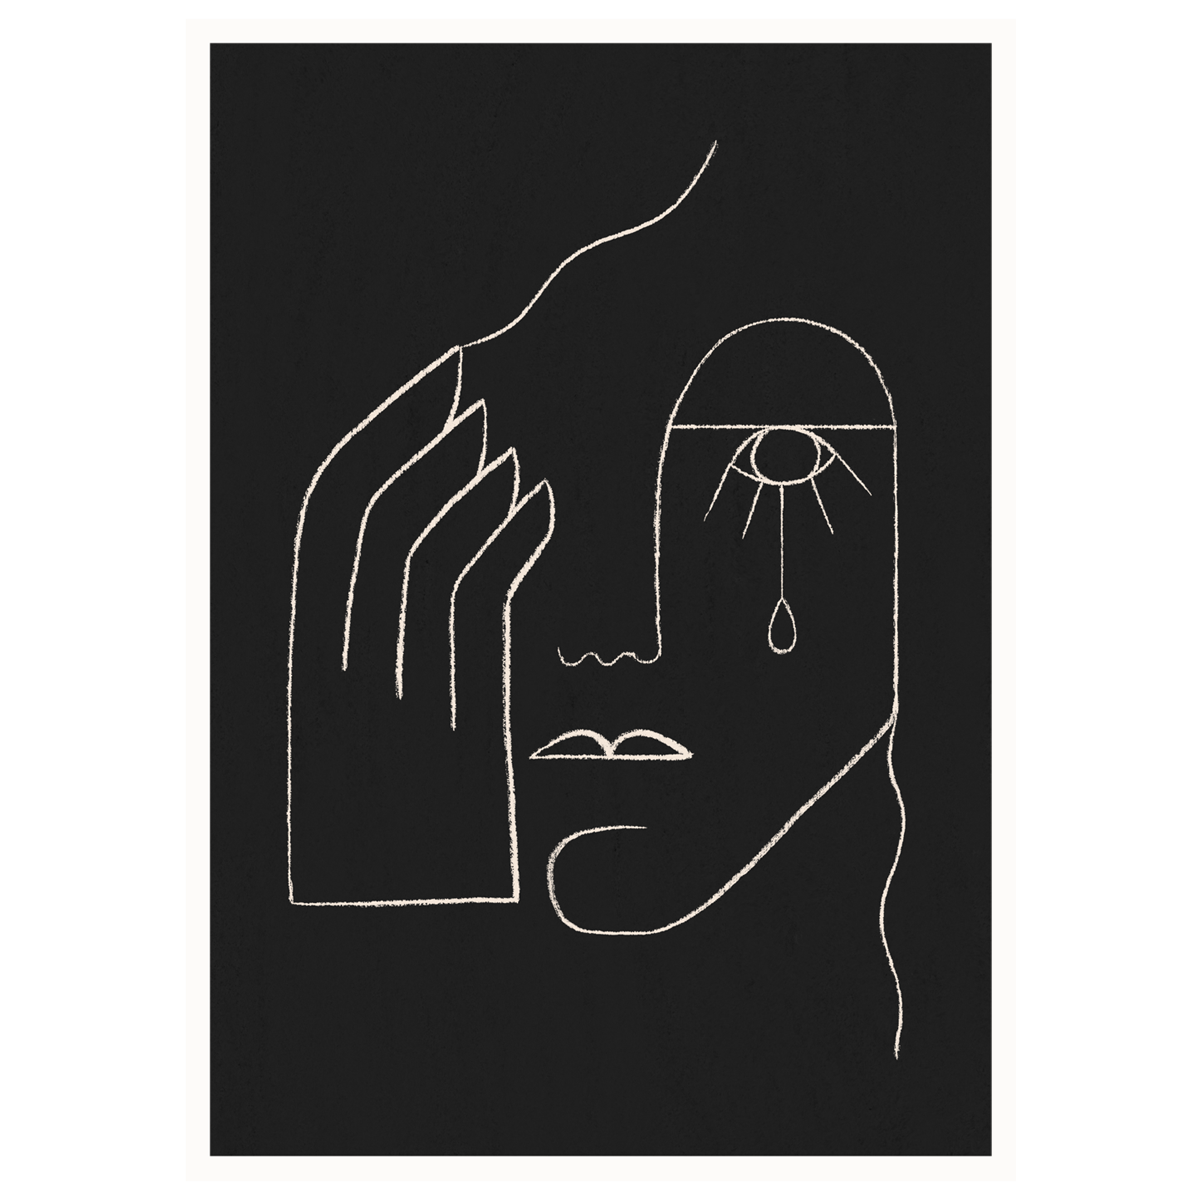 Single Tear – By Kit Agar